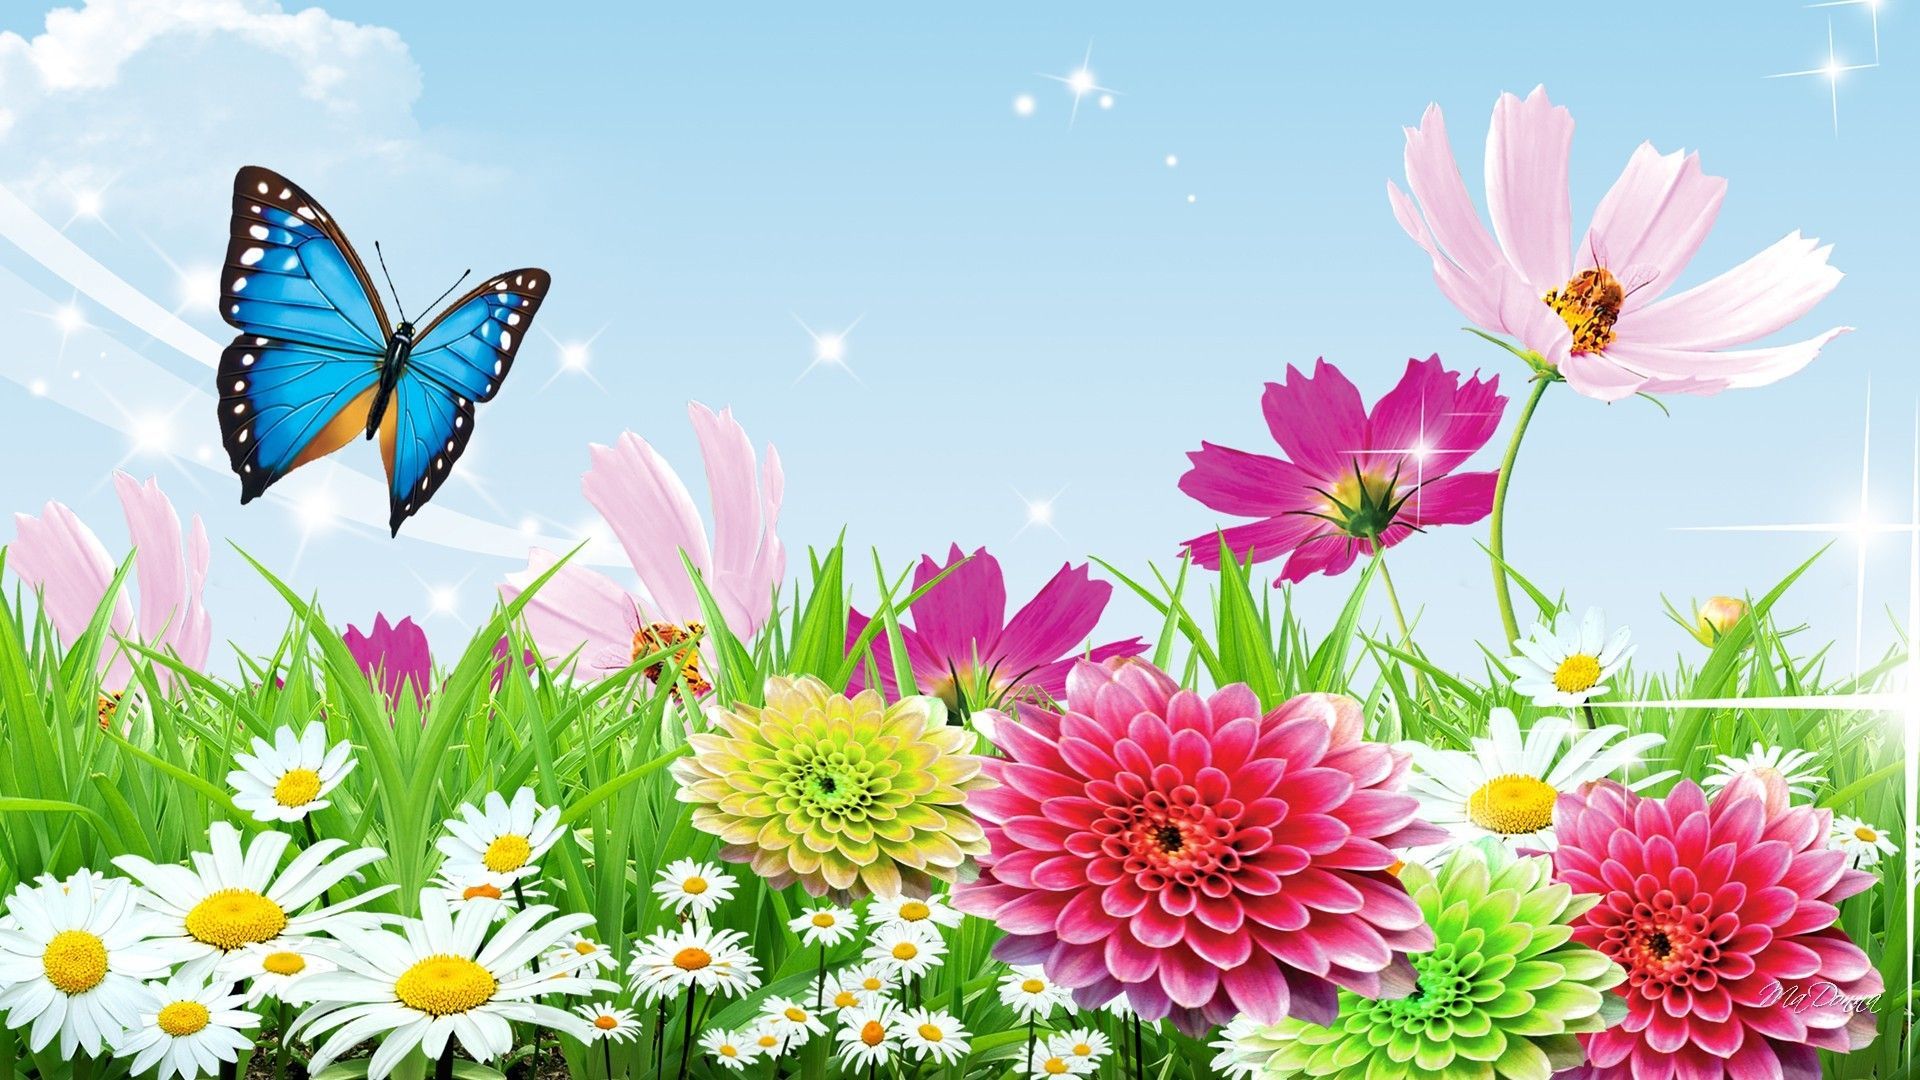 Spring Butterfly Wallpaper Widescreen Click Wallpaper. Butterfly wallpaper, Spring wallpaper, Flower wallpaper